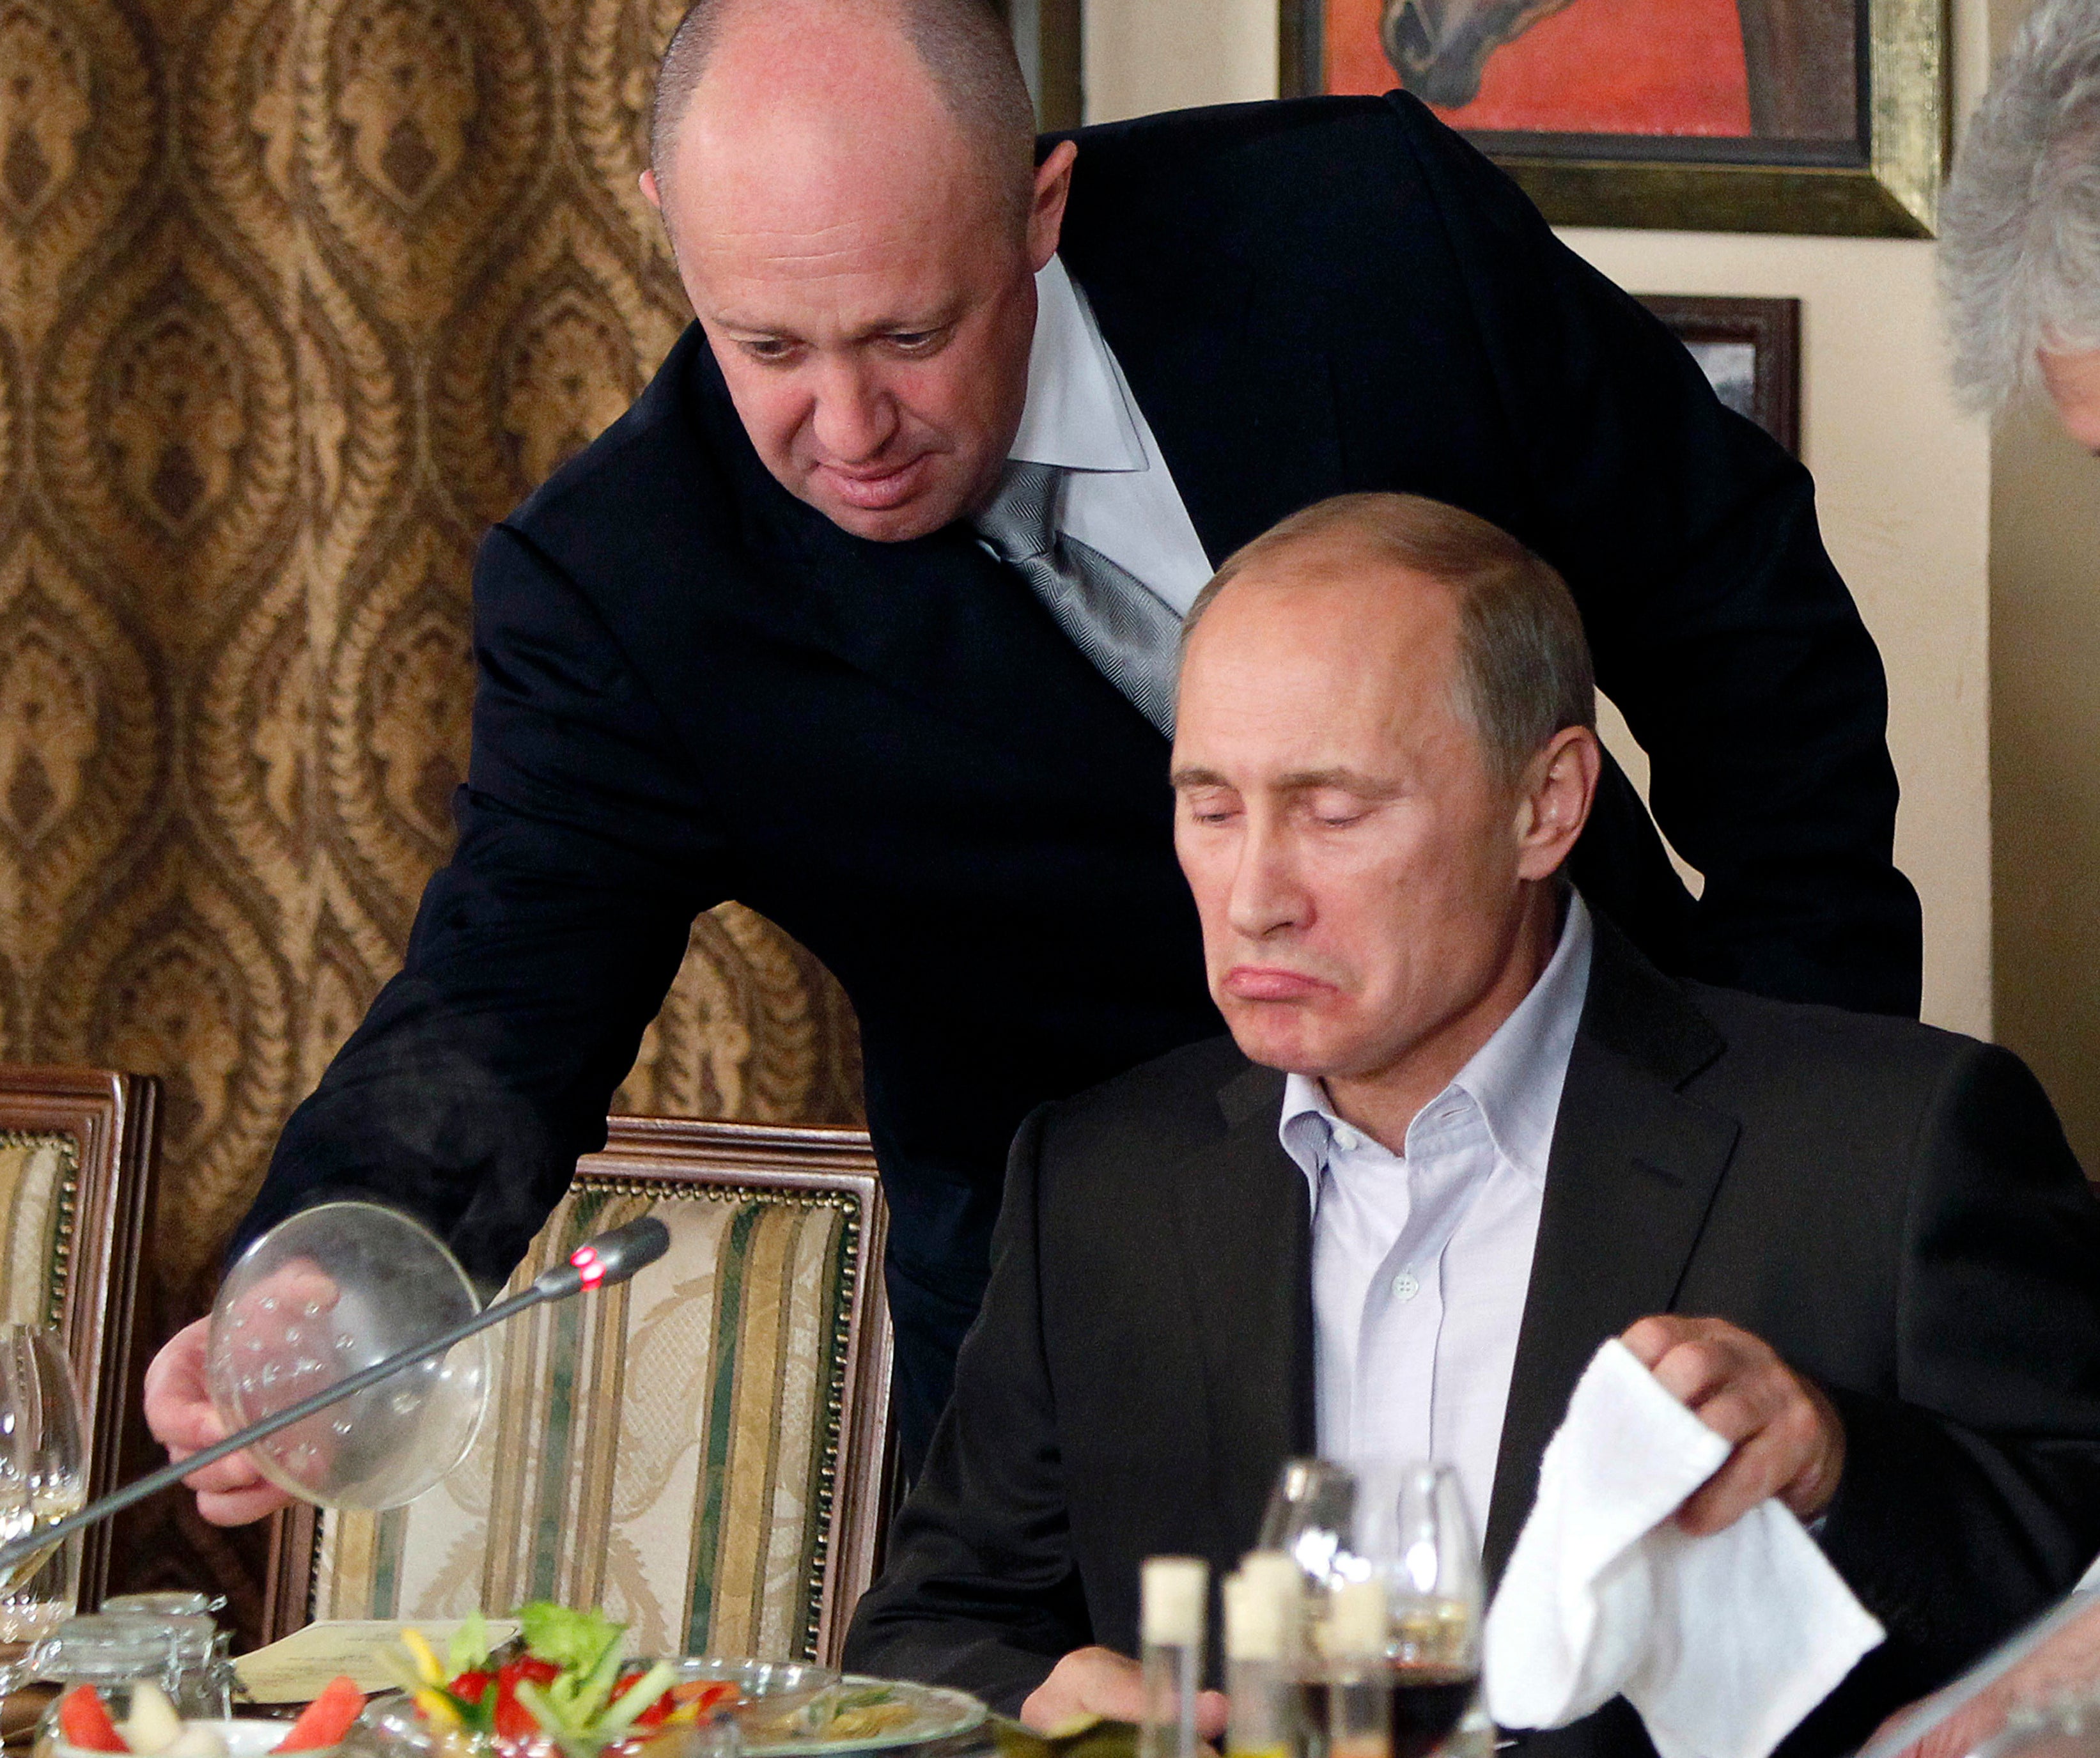 Yevgeny Prigozhin serves food to Vladimir Putin at Prigozhin's restaurant outside Moscow in 2011